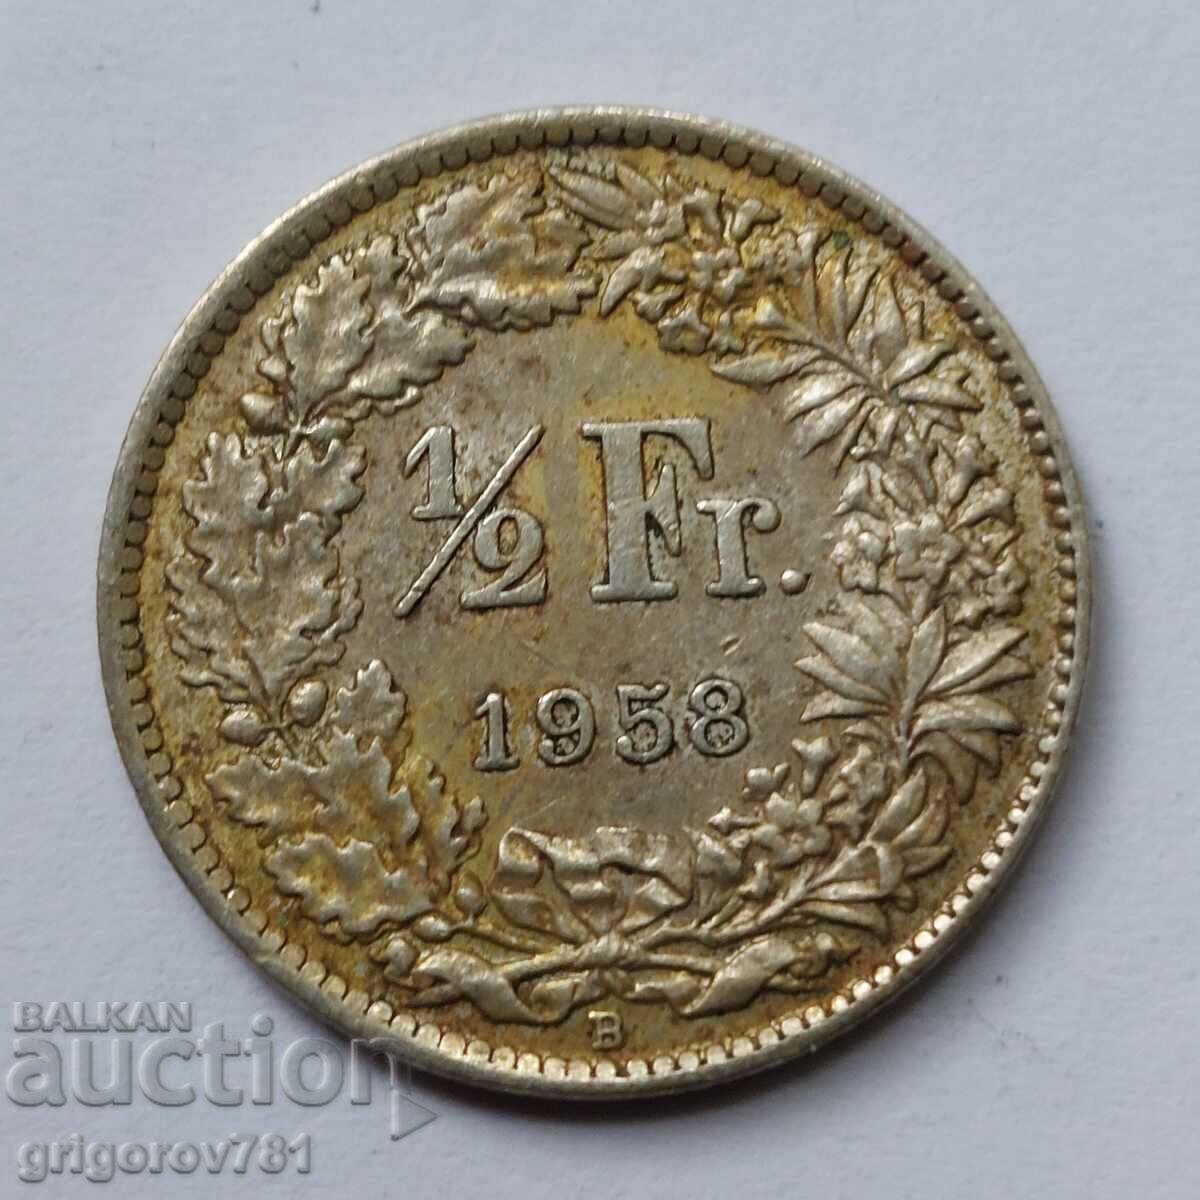 1/2 франк сребро Швейцария 1958 - сребърна монета #3